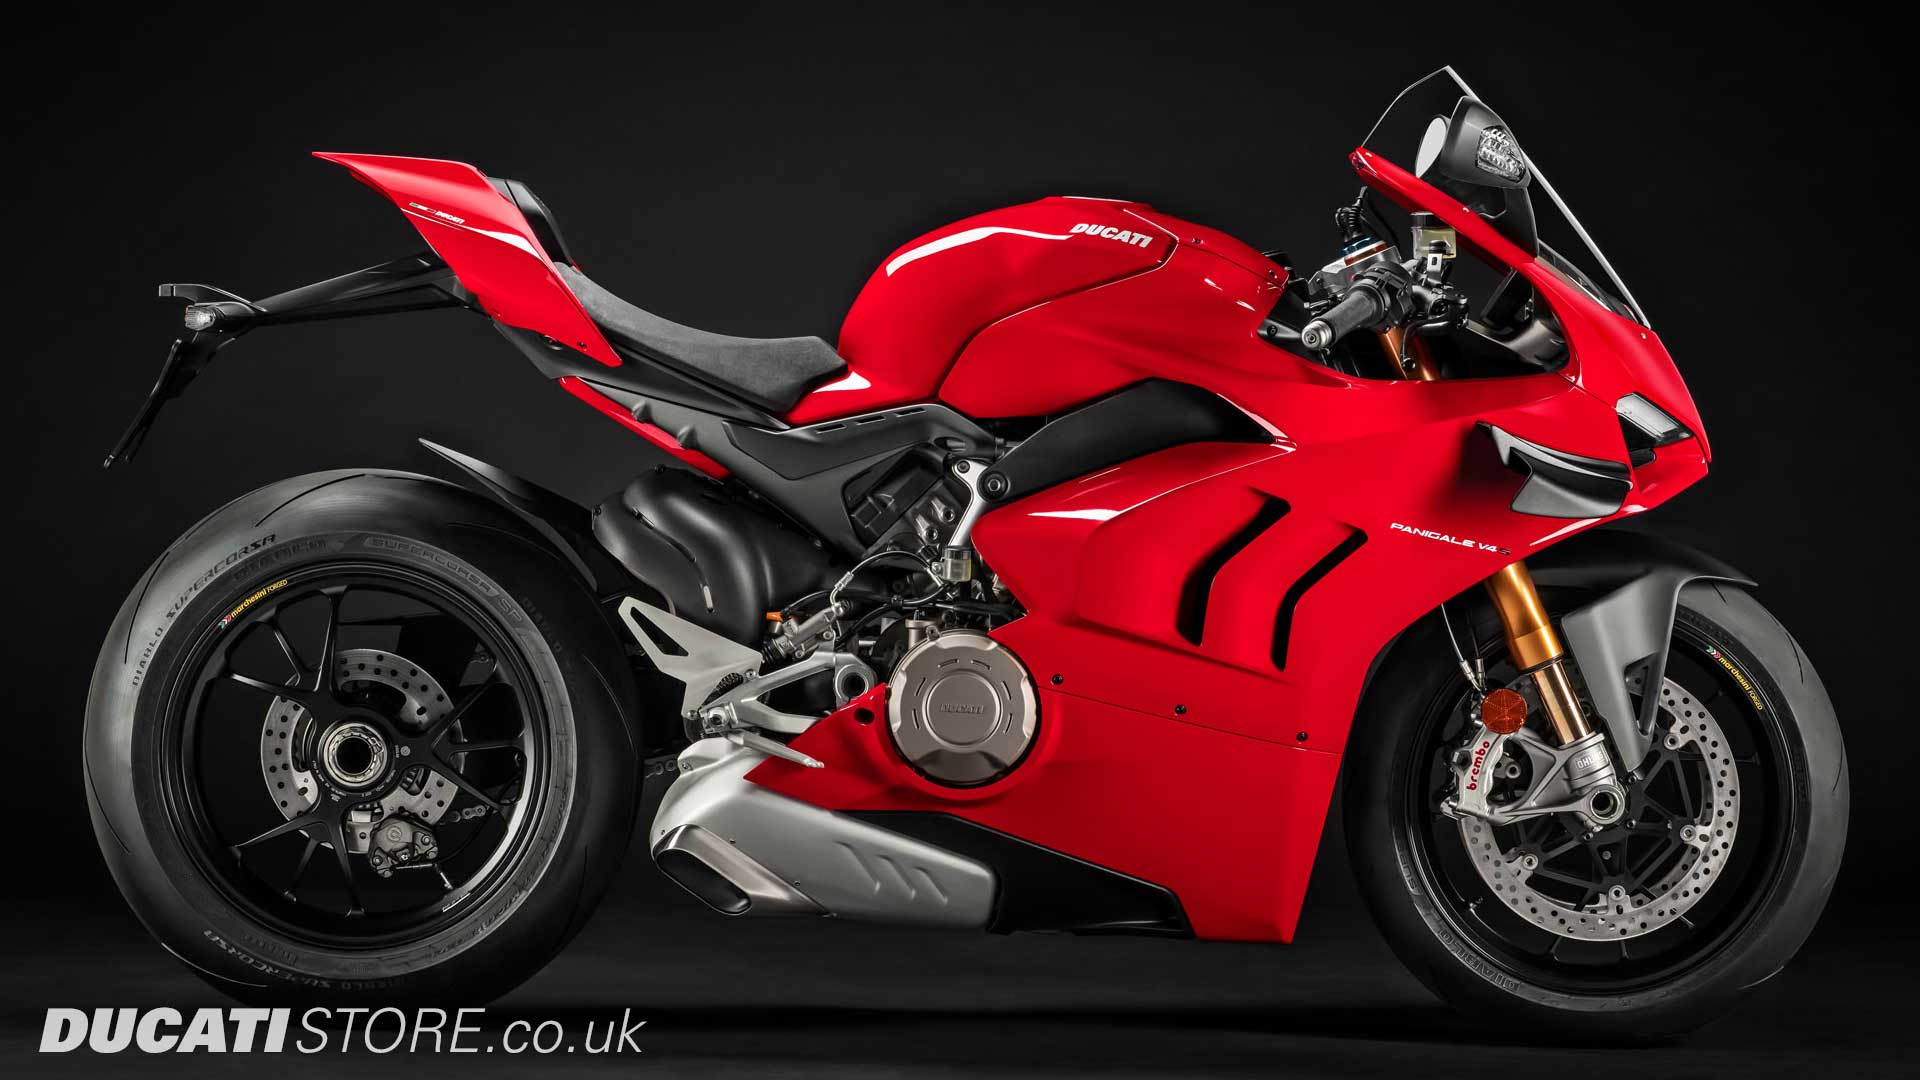 2020 Ducati Panigale V4S for sale at Ducati Preston, Lancashire, Scotland